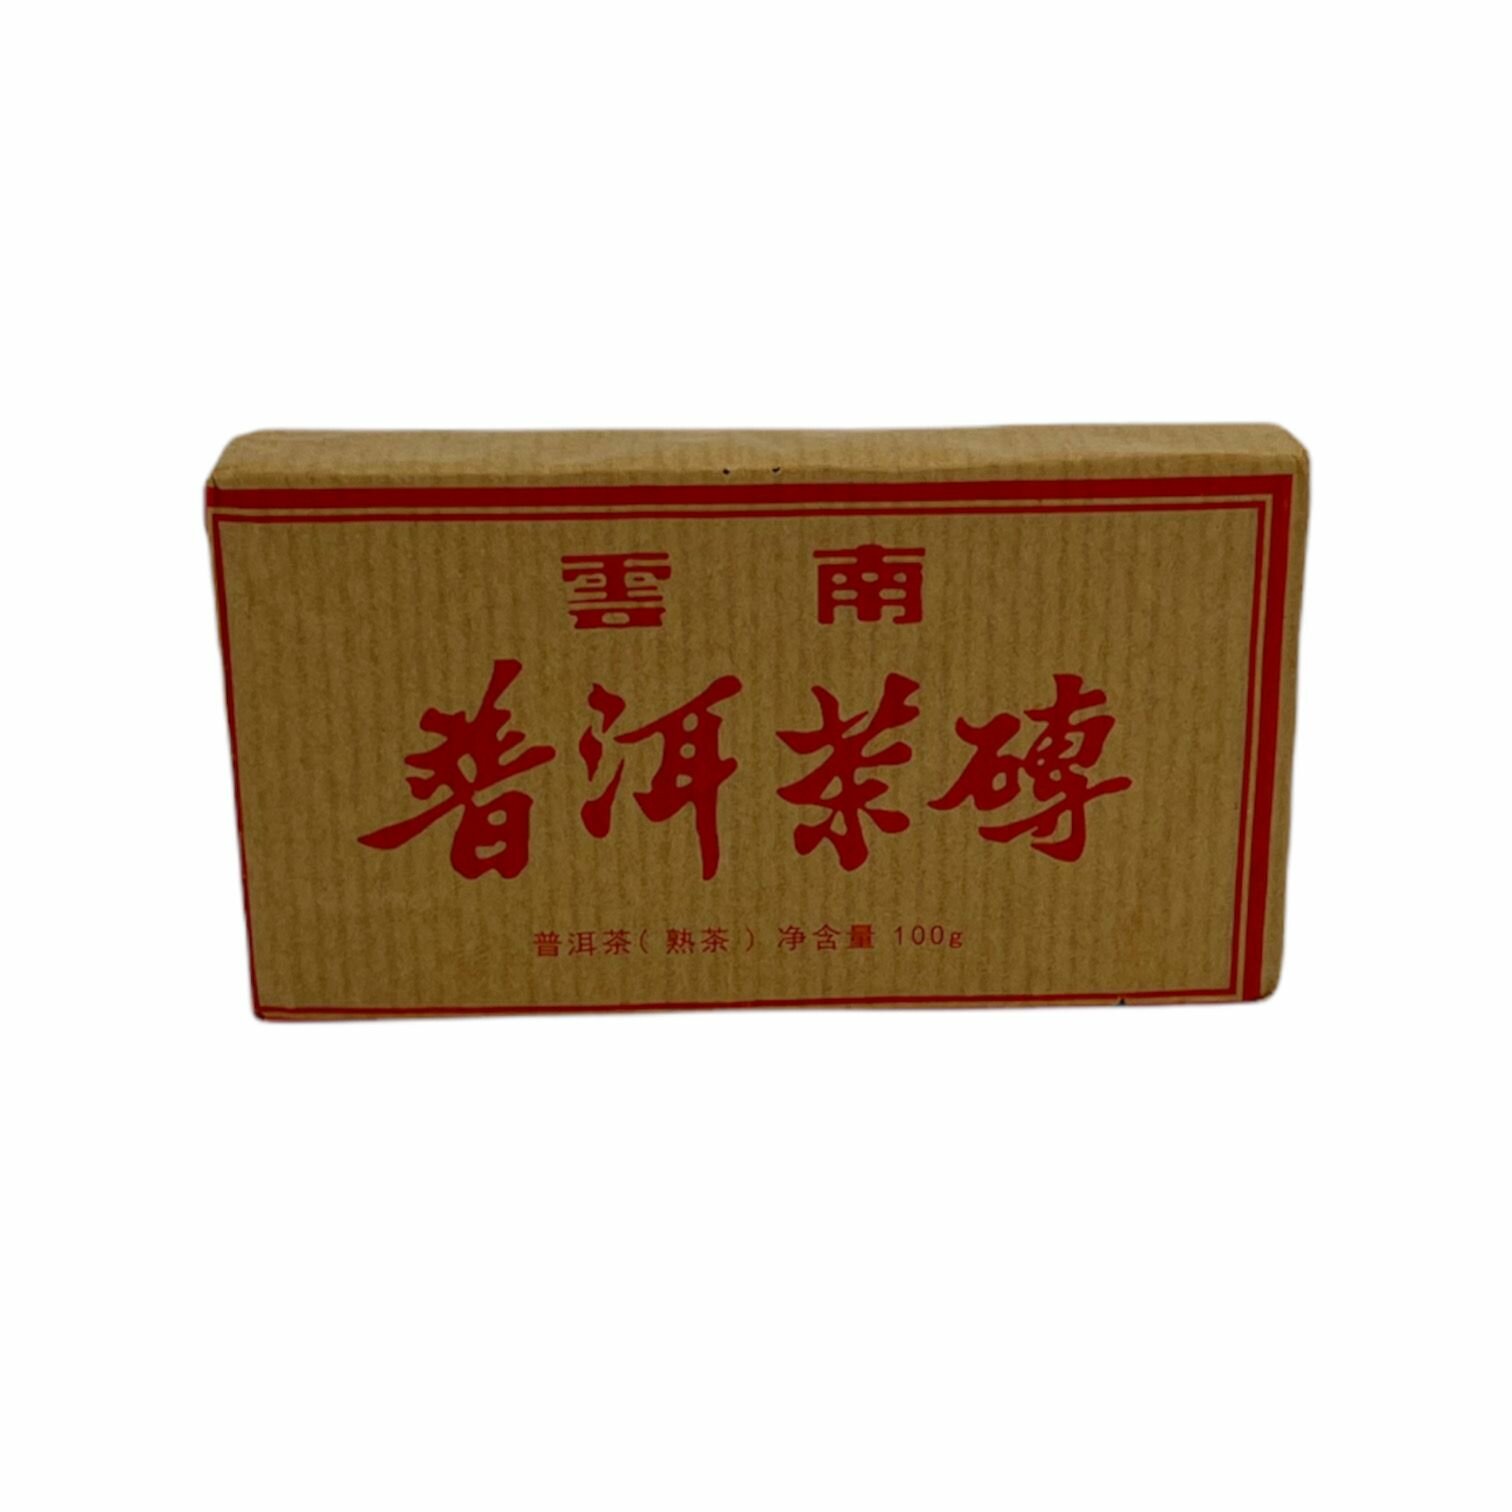 Настоящий китайский черный Чай Шу пуэр "Гунтин Ча Чжуань" выдержанный, прессованный кирпич 100гр.